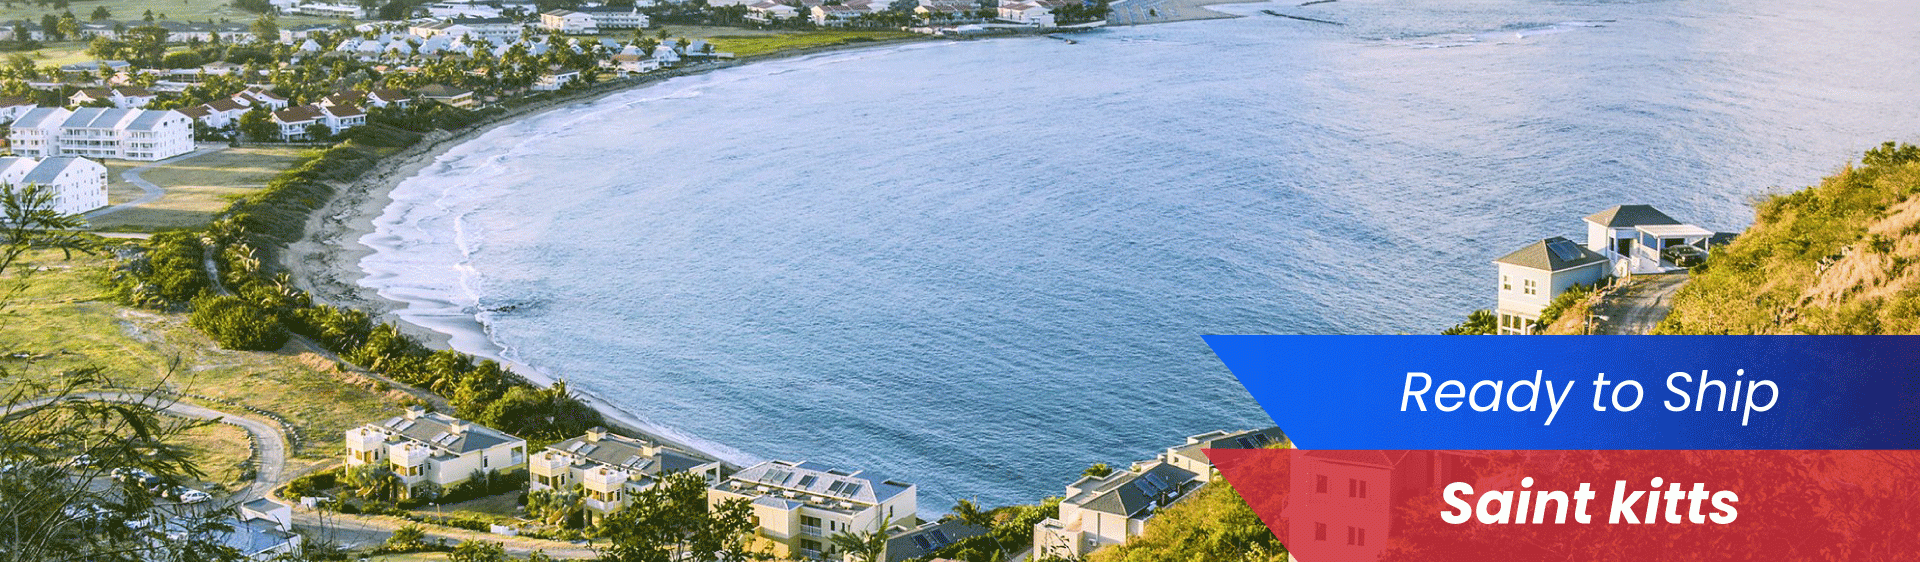 Saint Kitts Banner